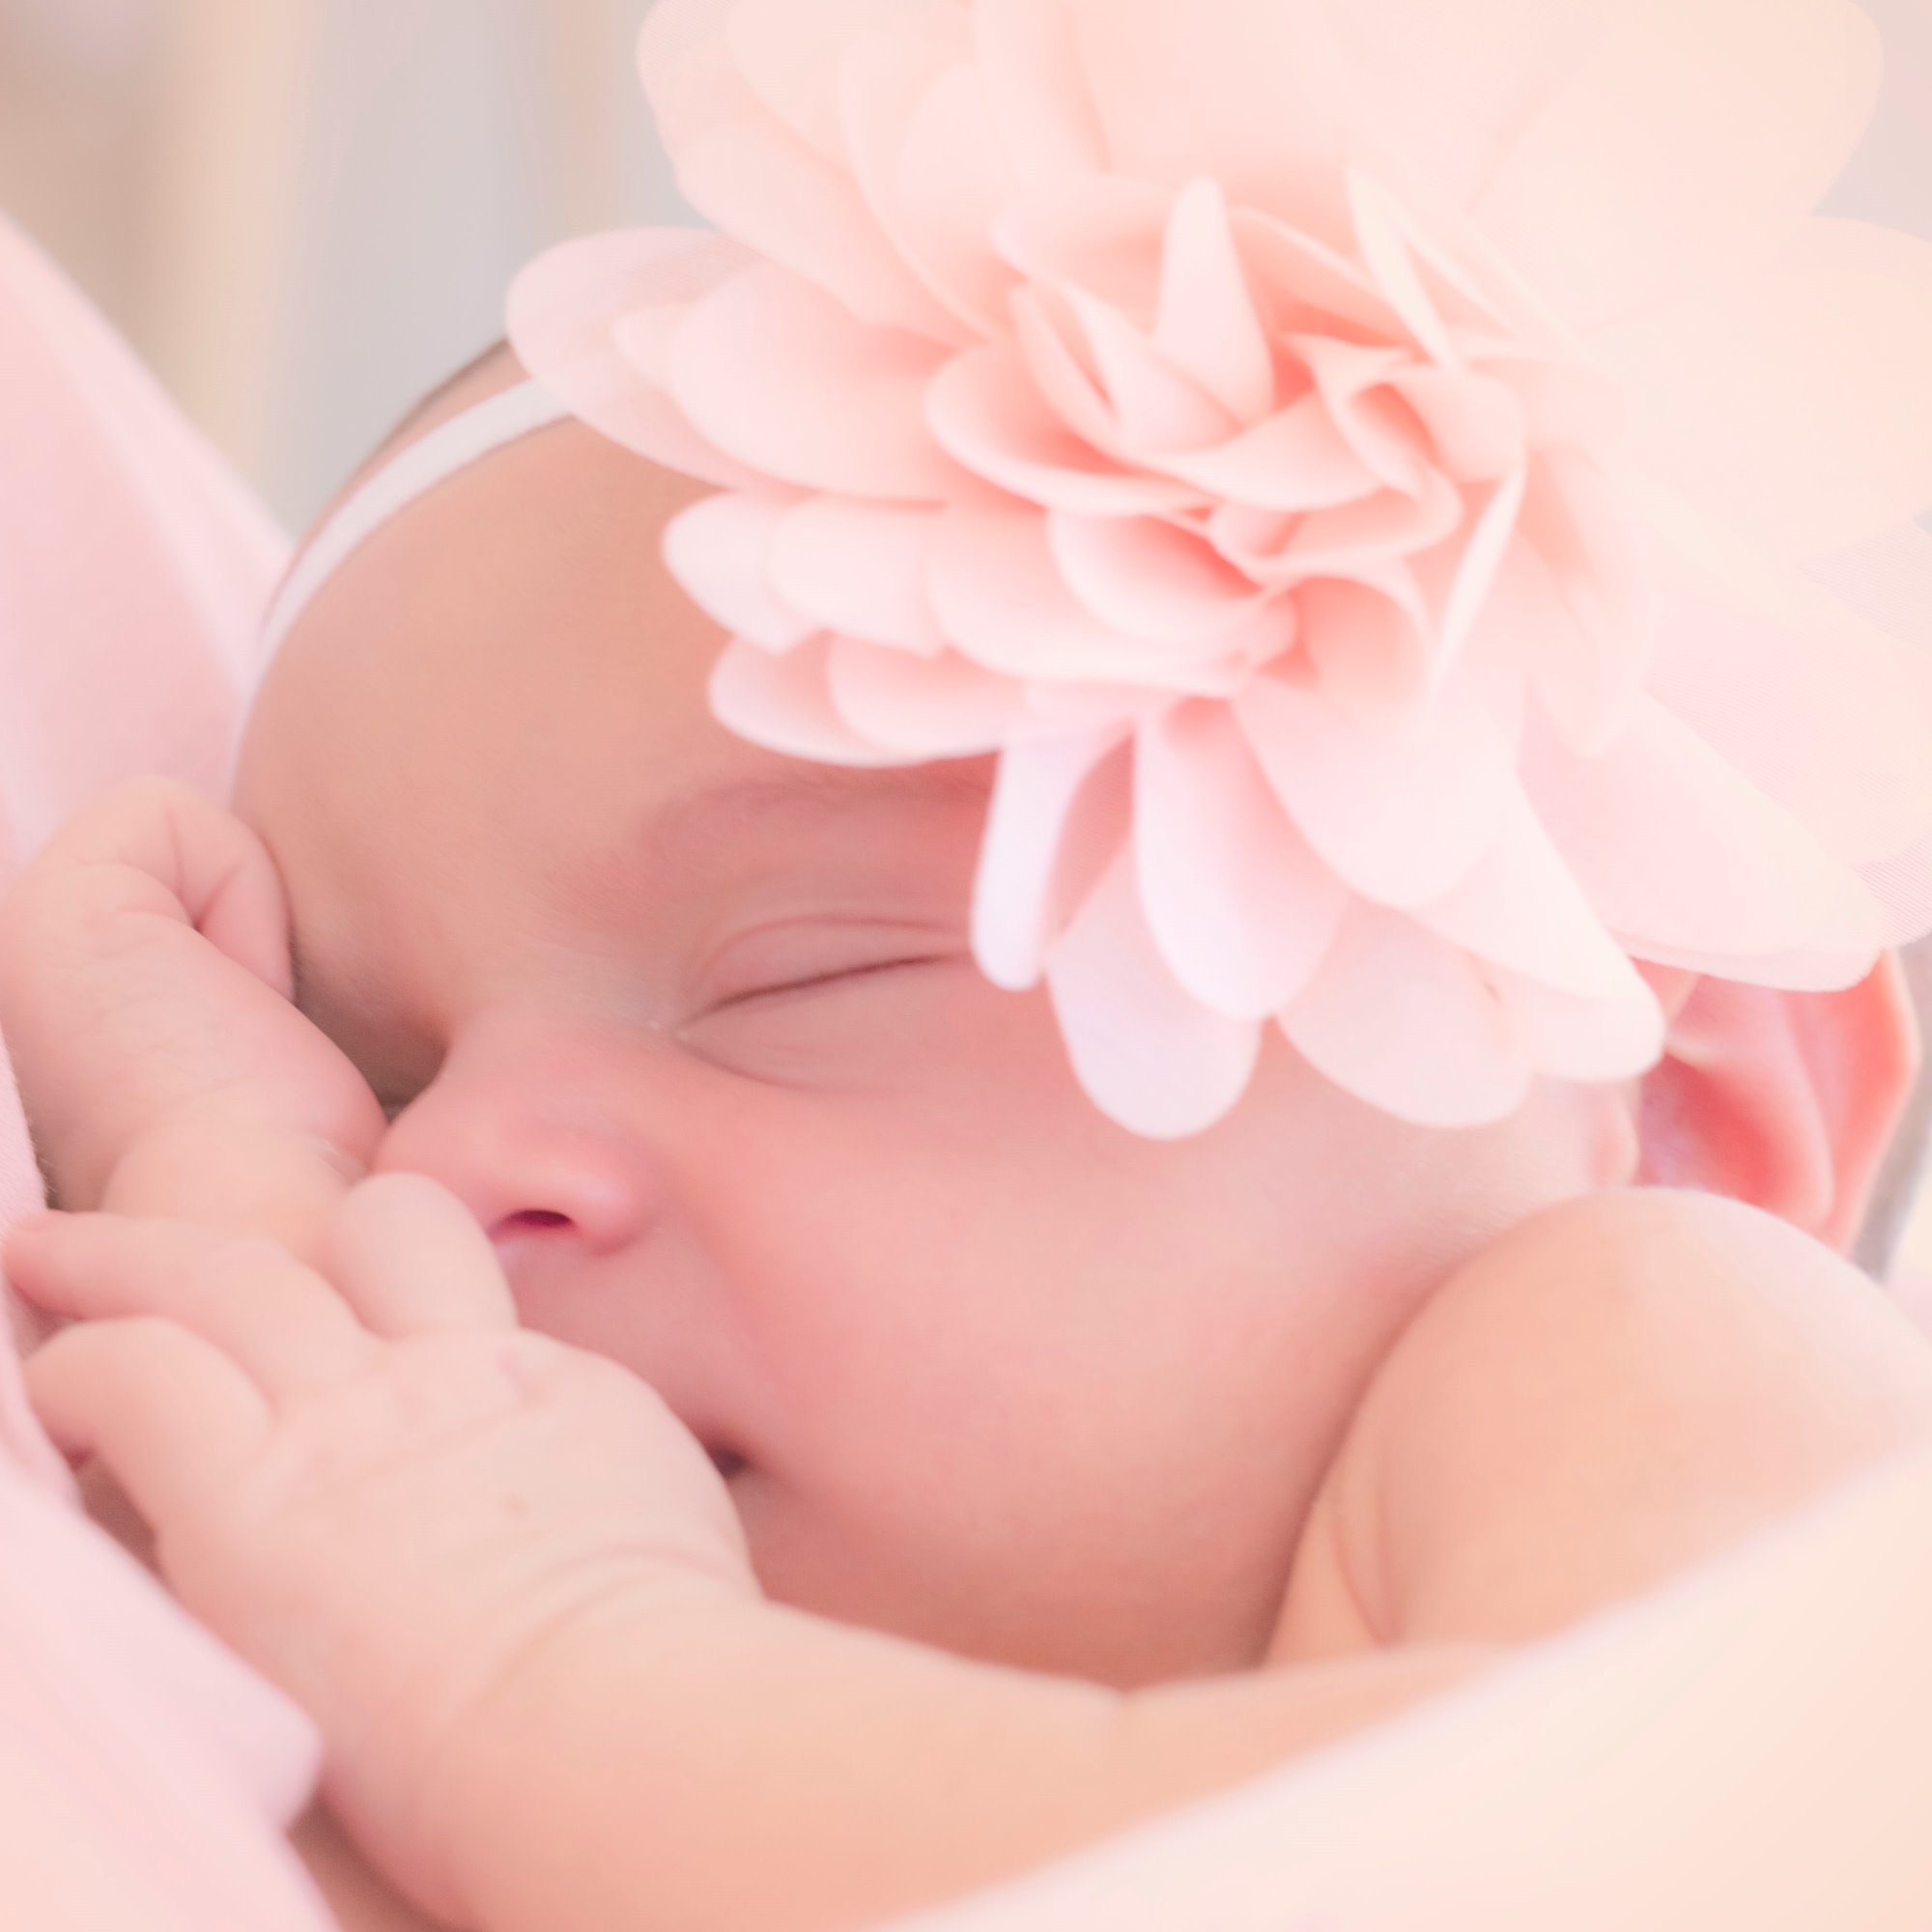 Cuando hacer las fotografias a nuestro hijo recién nacido (Newborn)